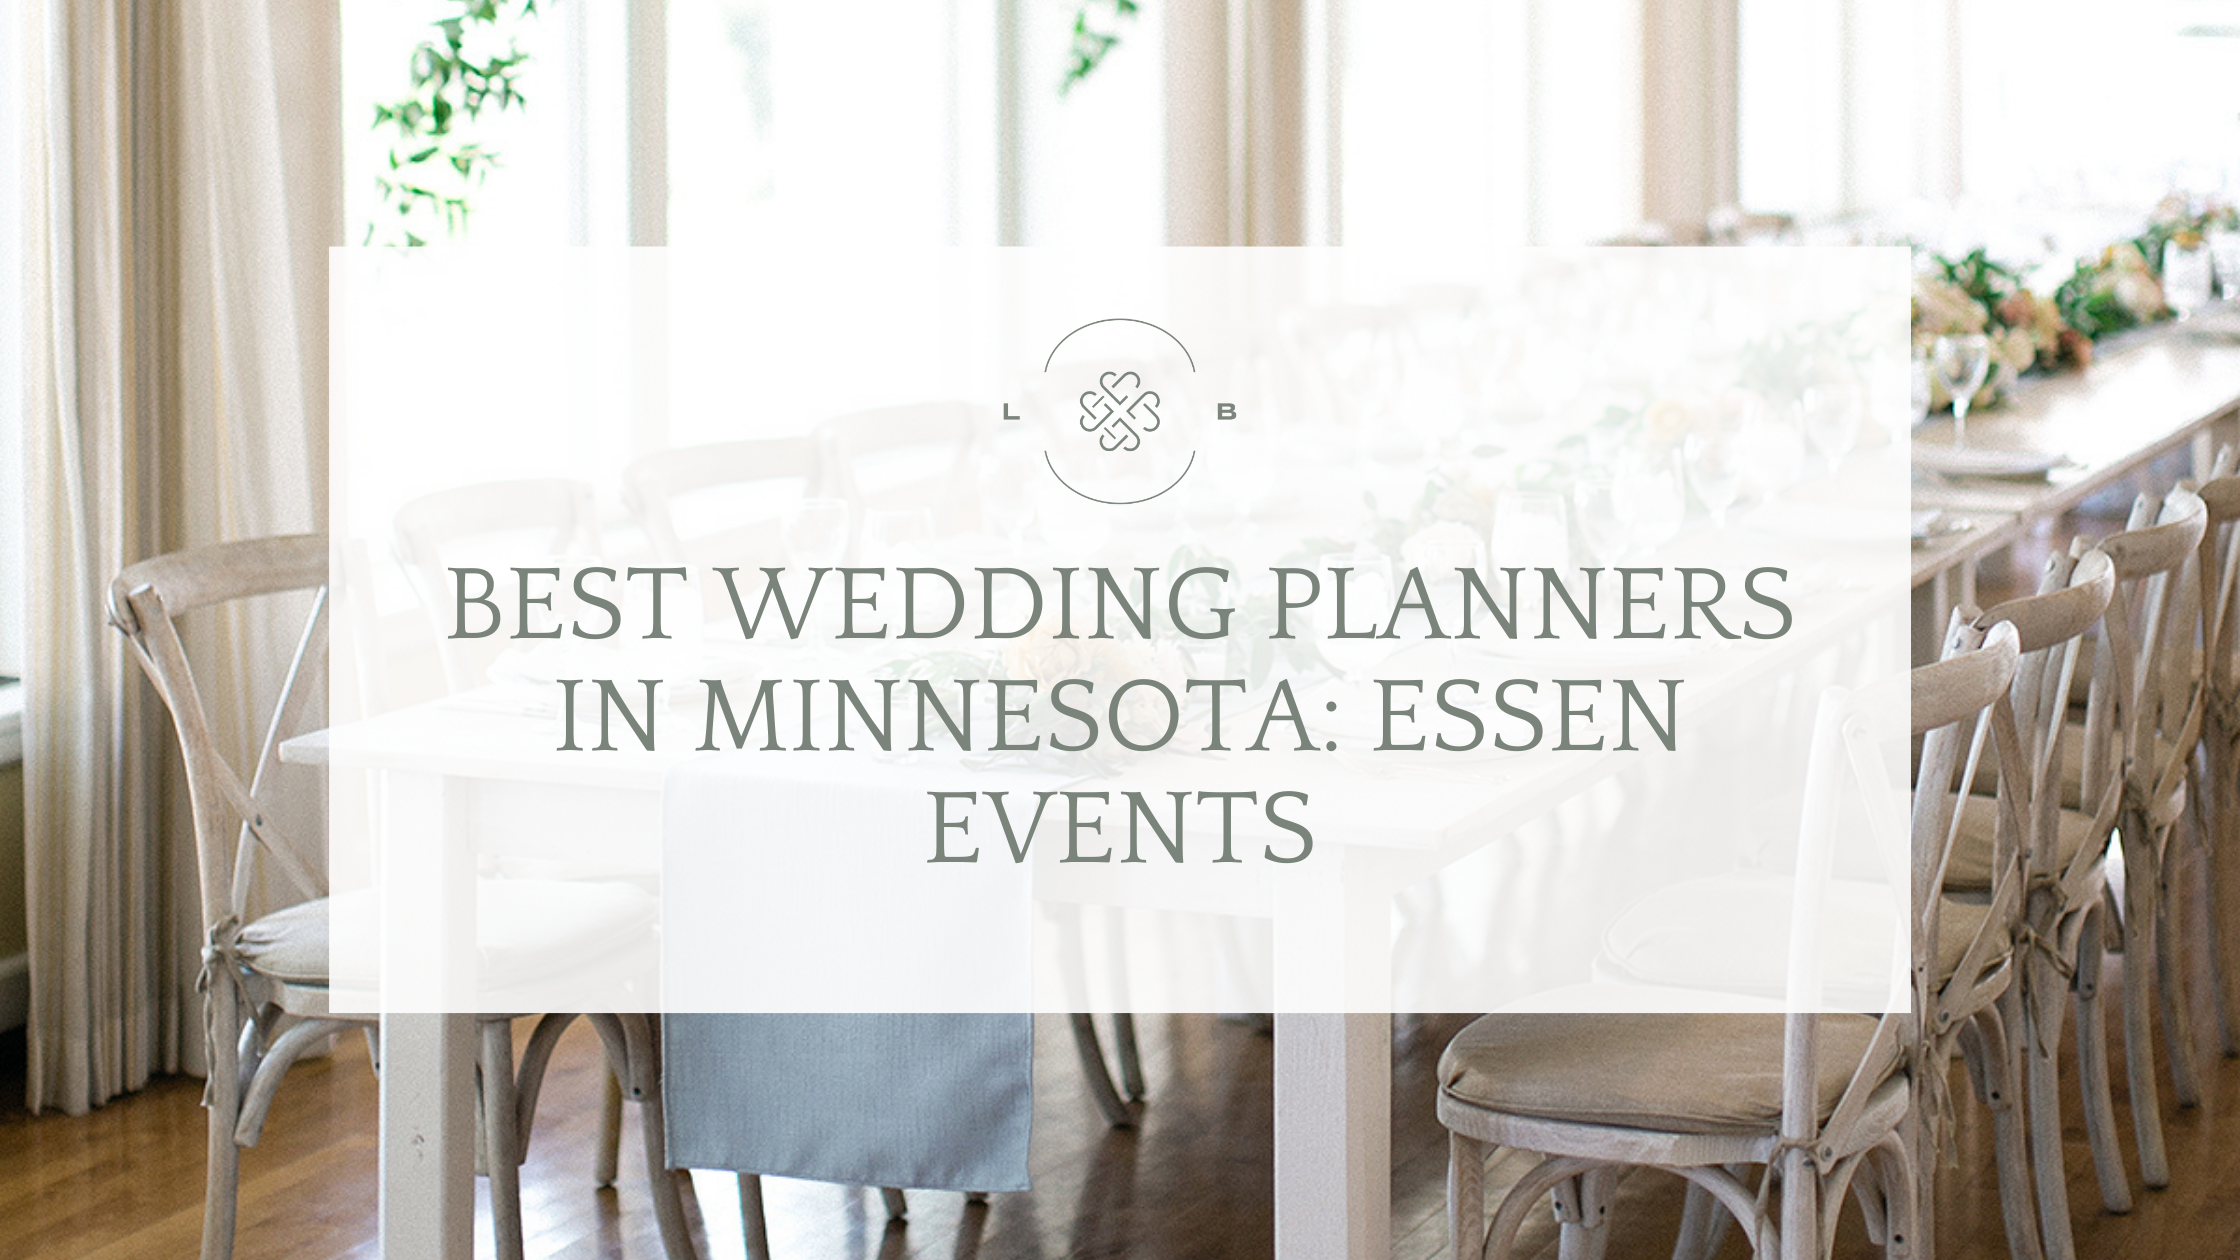 Essen Events Minneapolis wedding planner